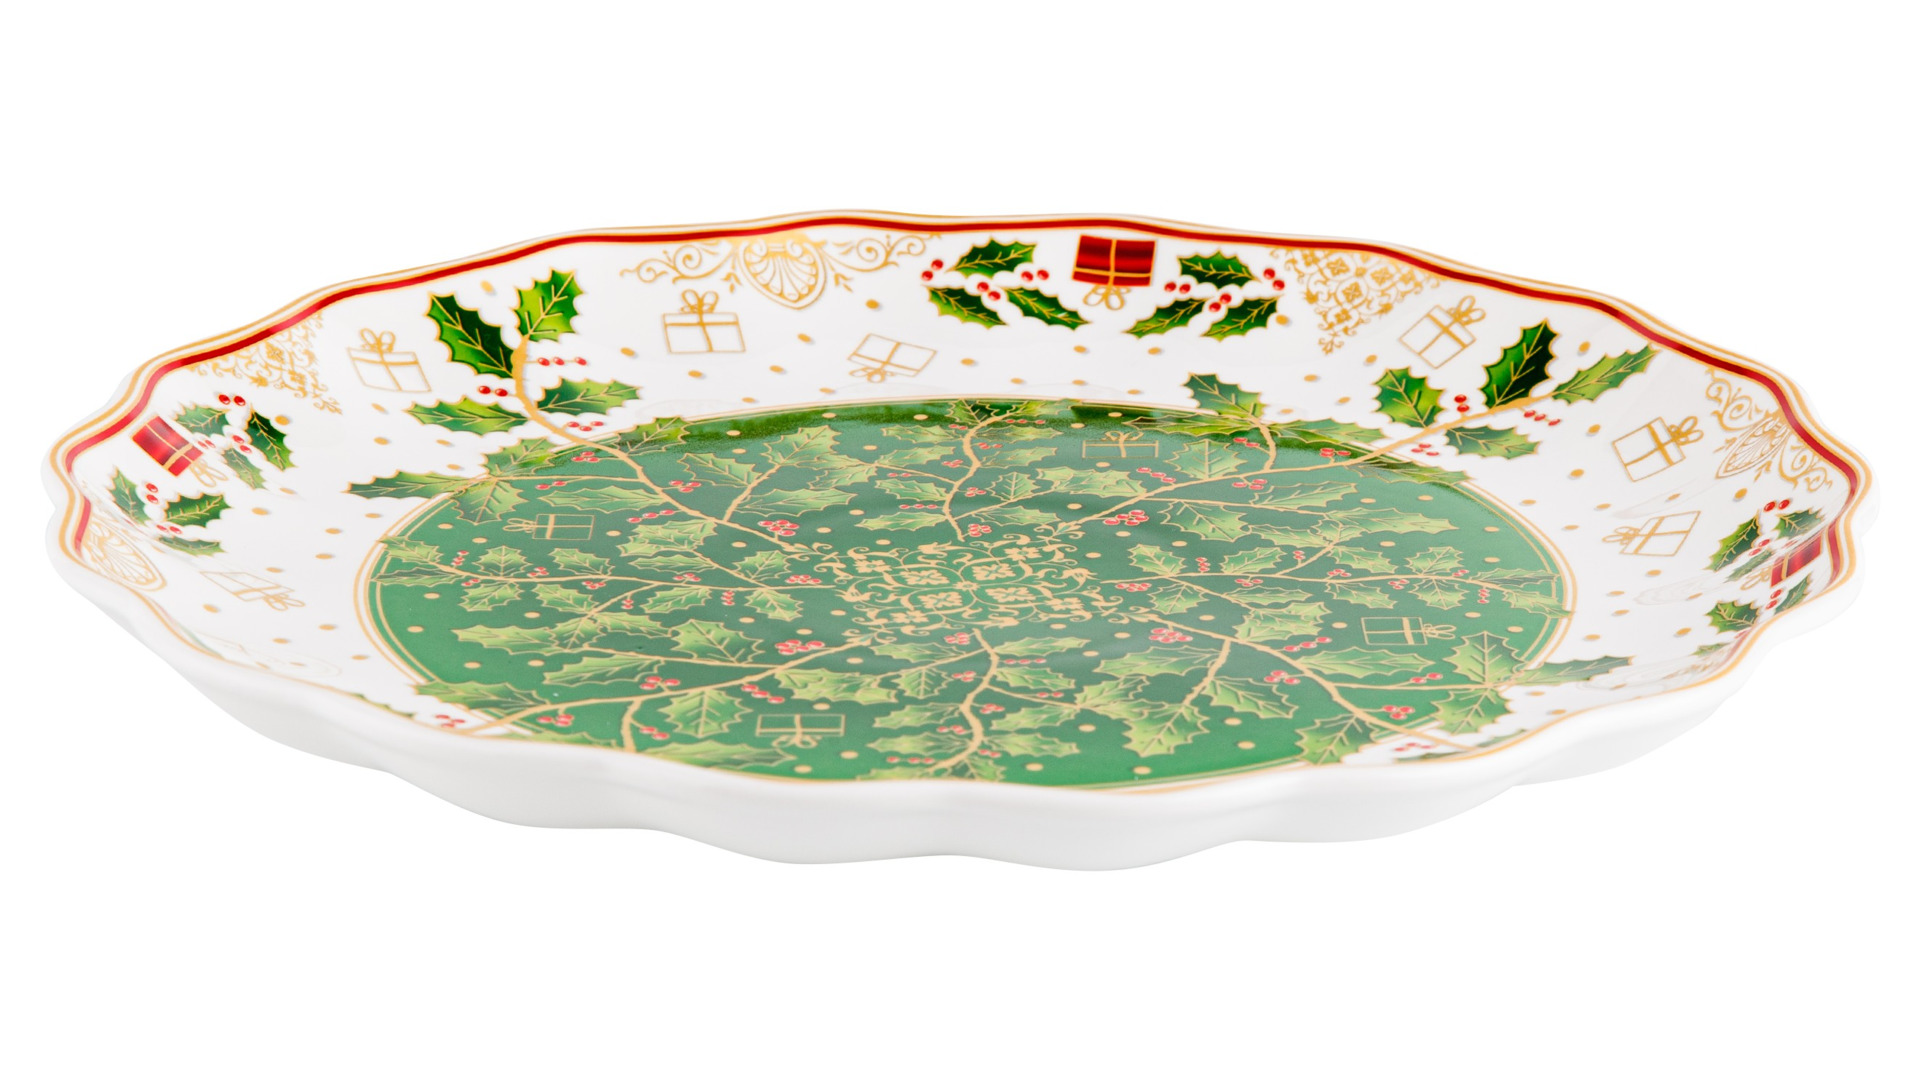 Блюдо сервировочное круглое Lamart Palais Royal Остролист 28 см, бело-зеленый, фарфор